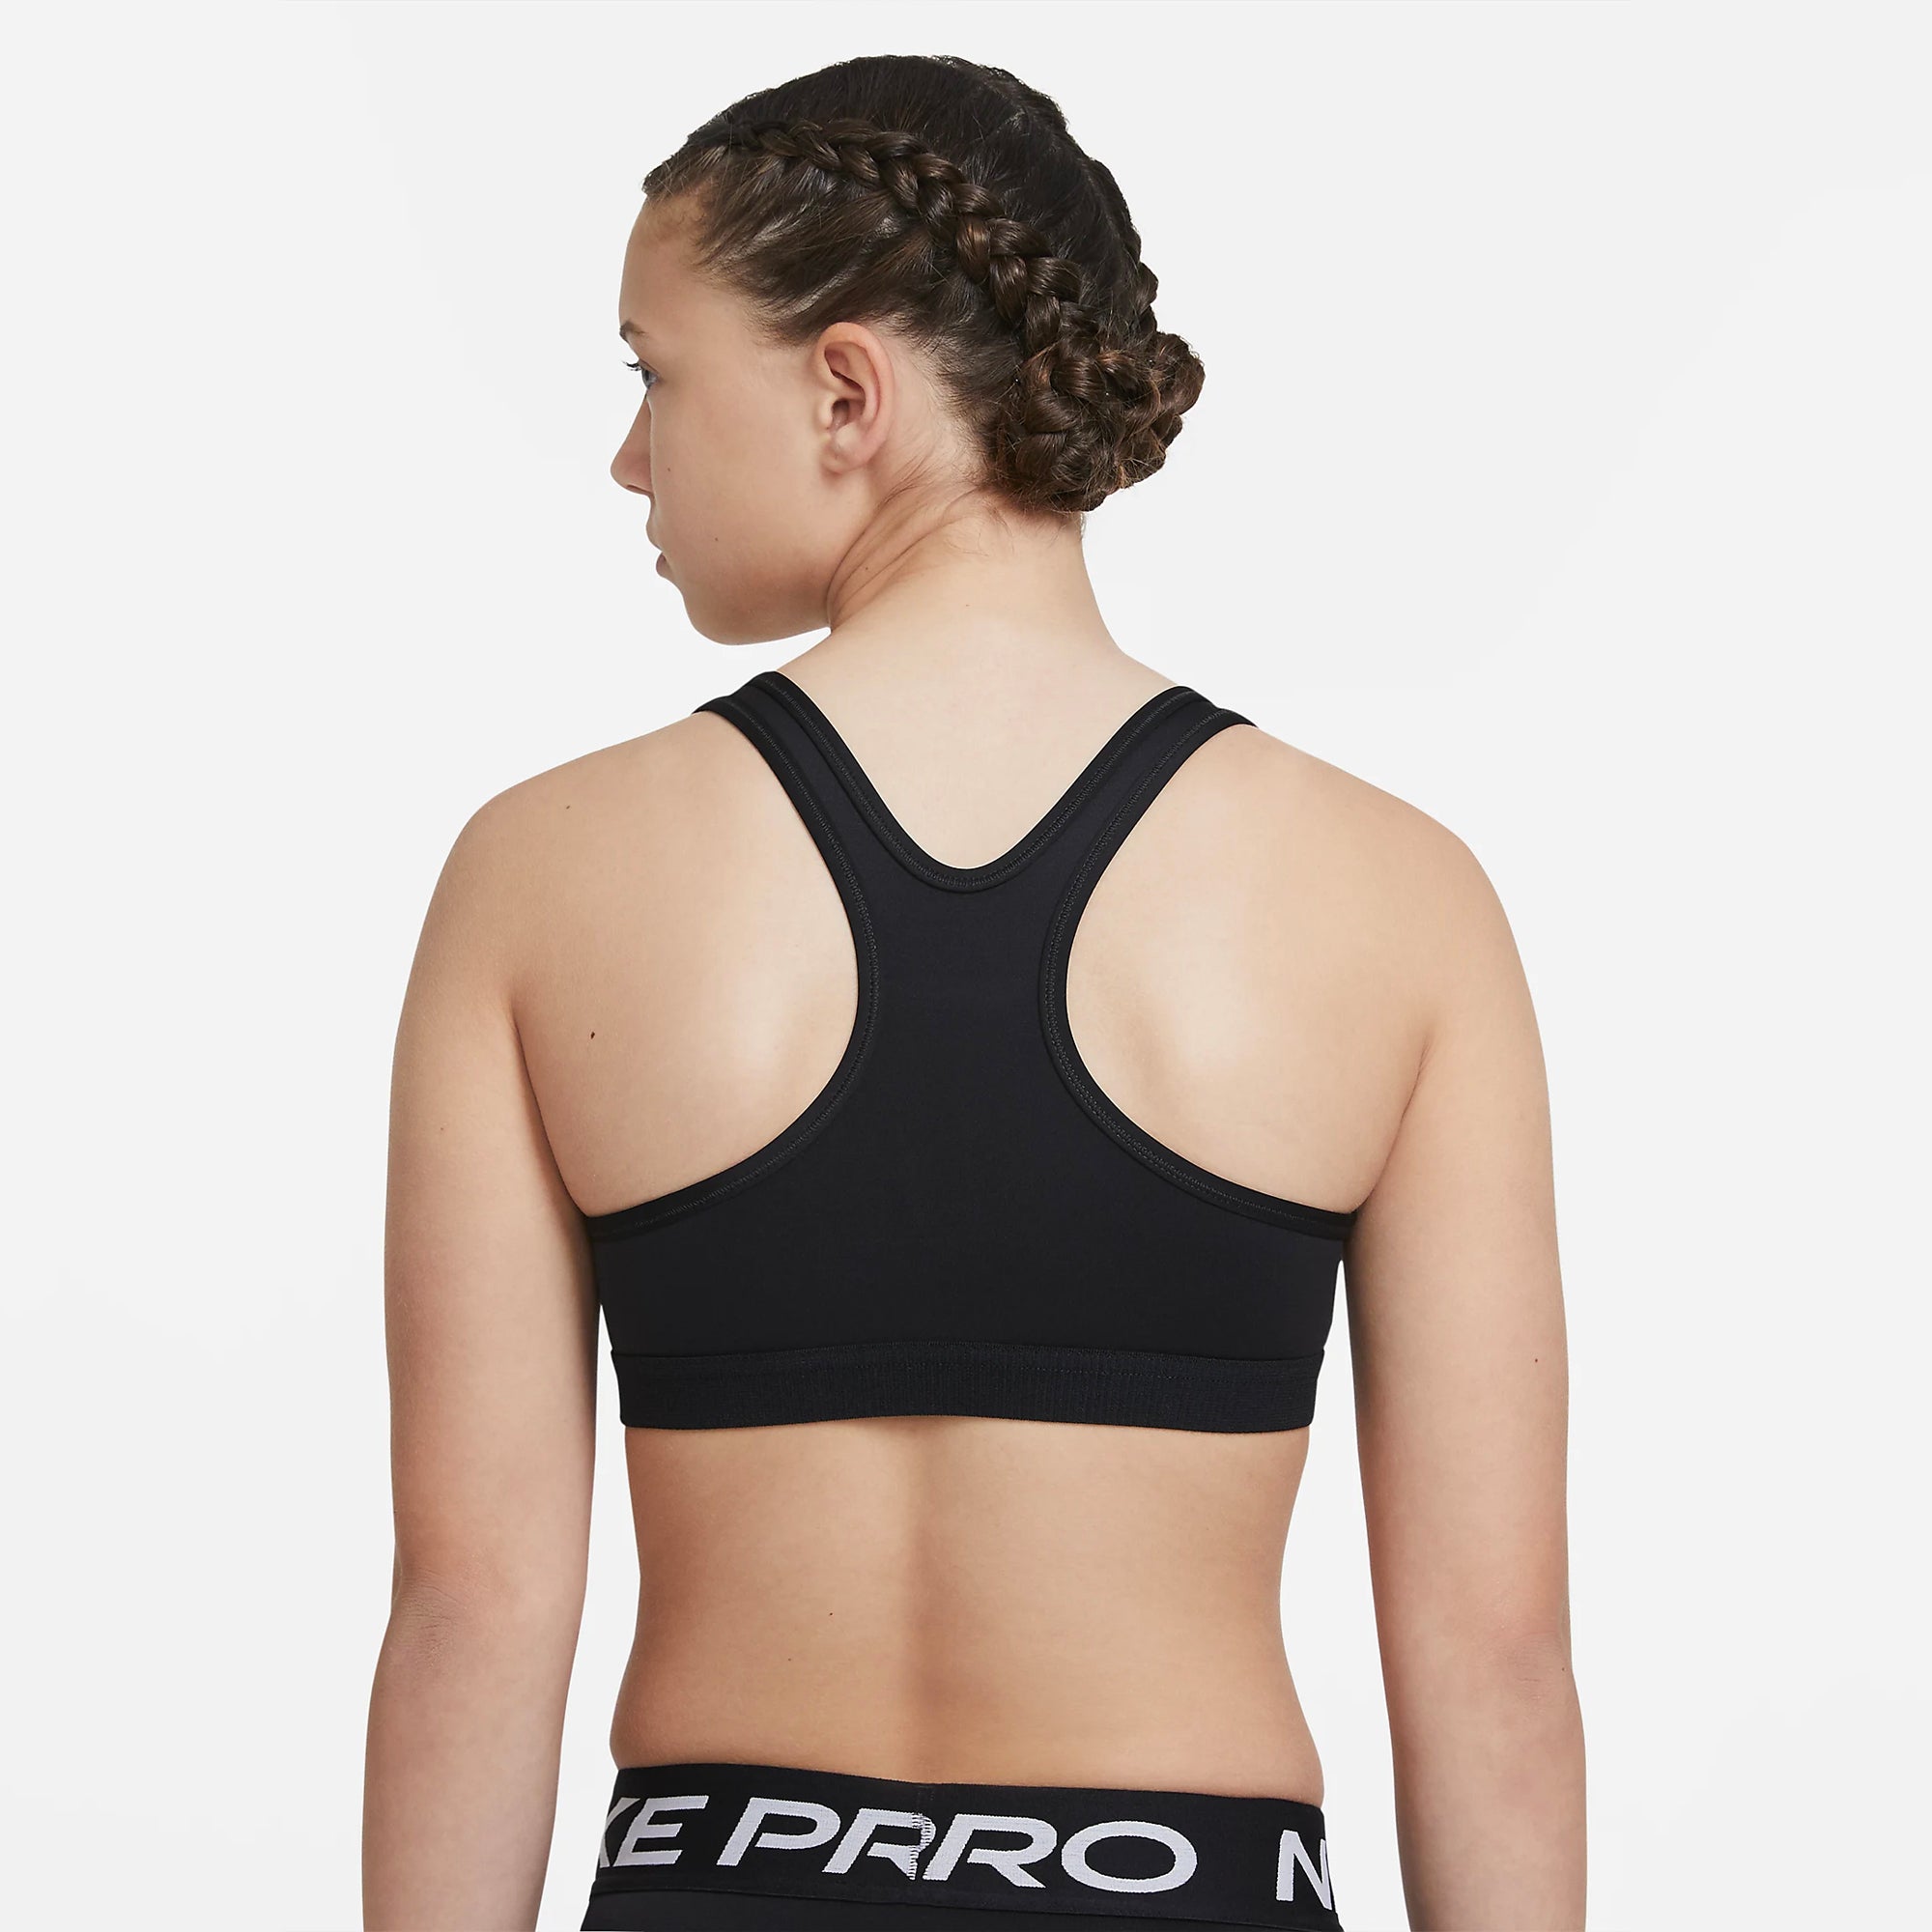 Nike Pro Sports Bras for Women